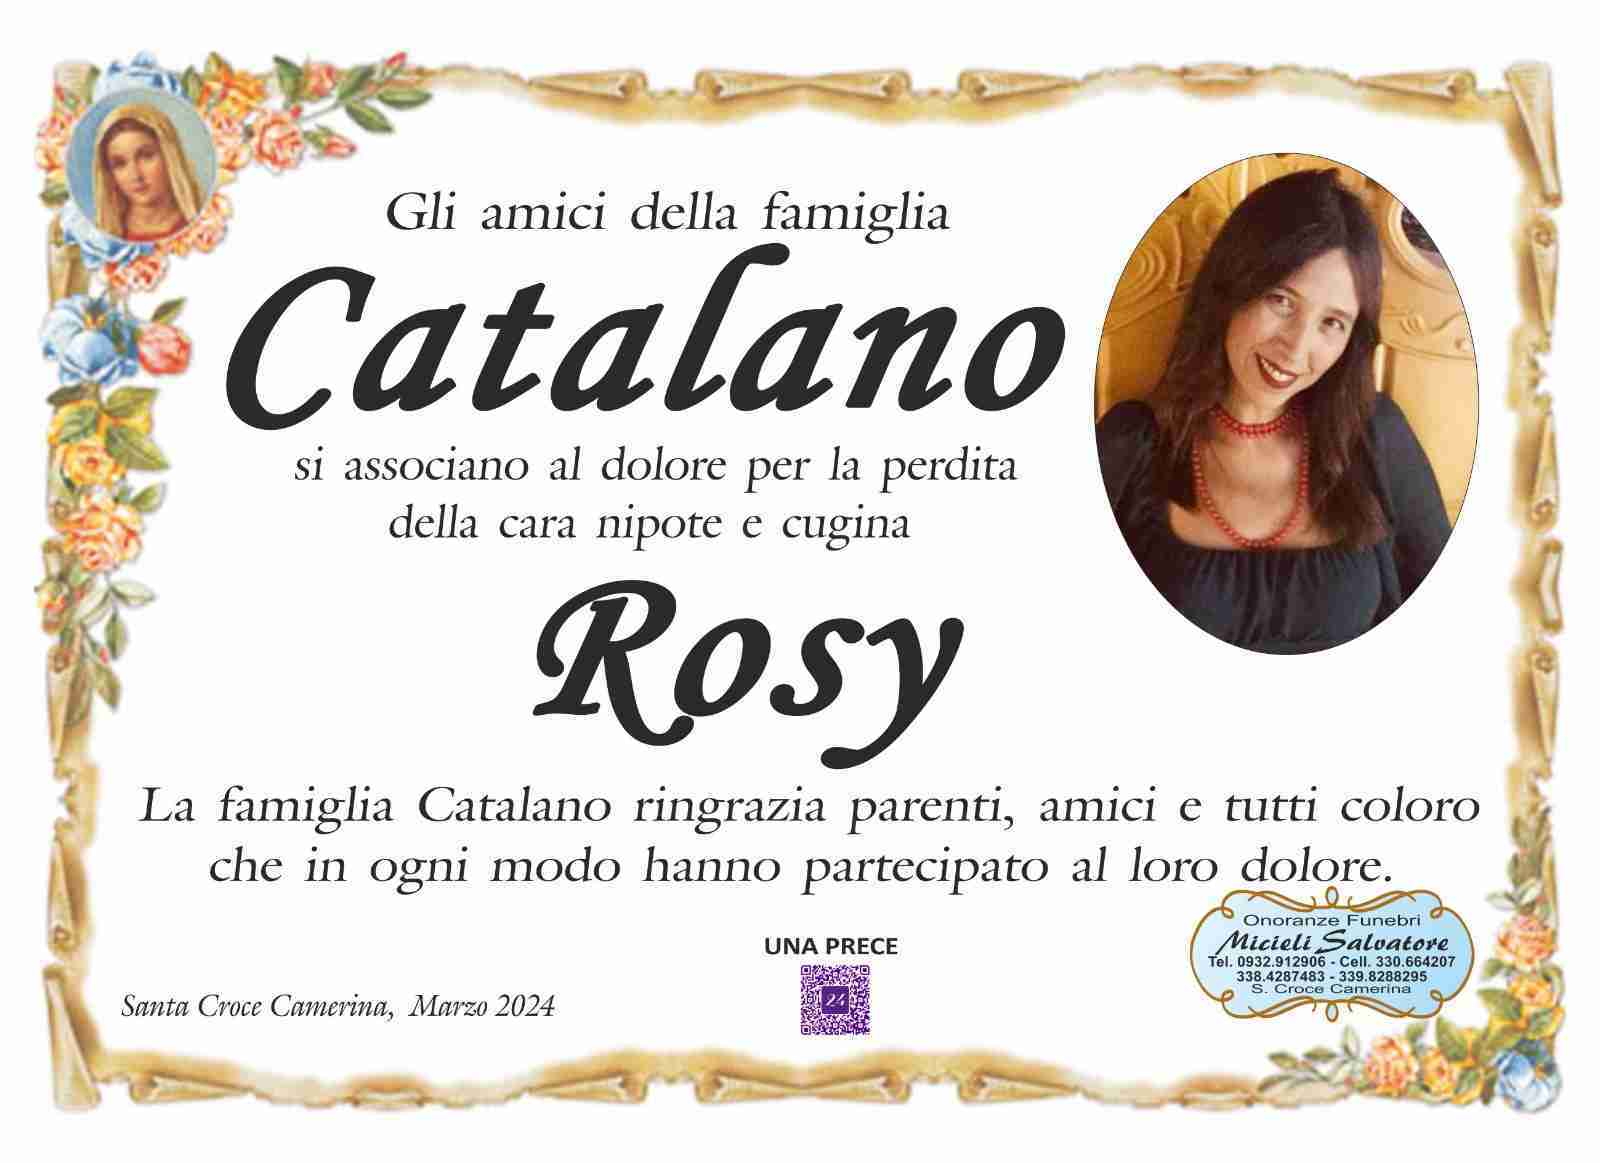 Rosy Catalano